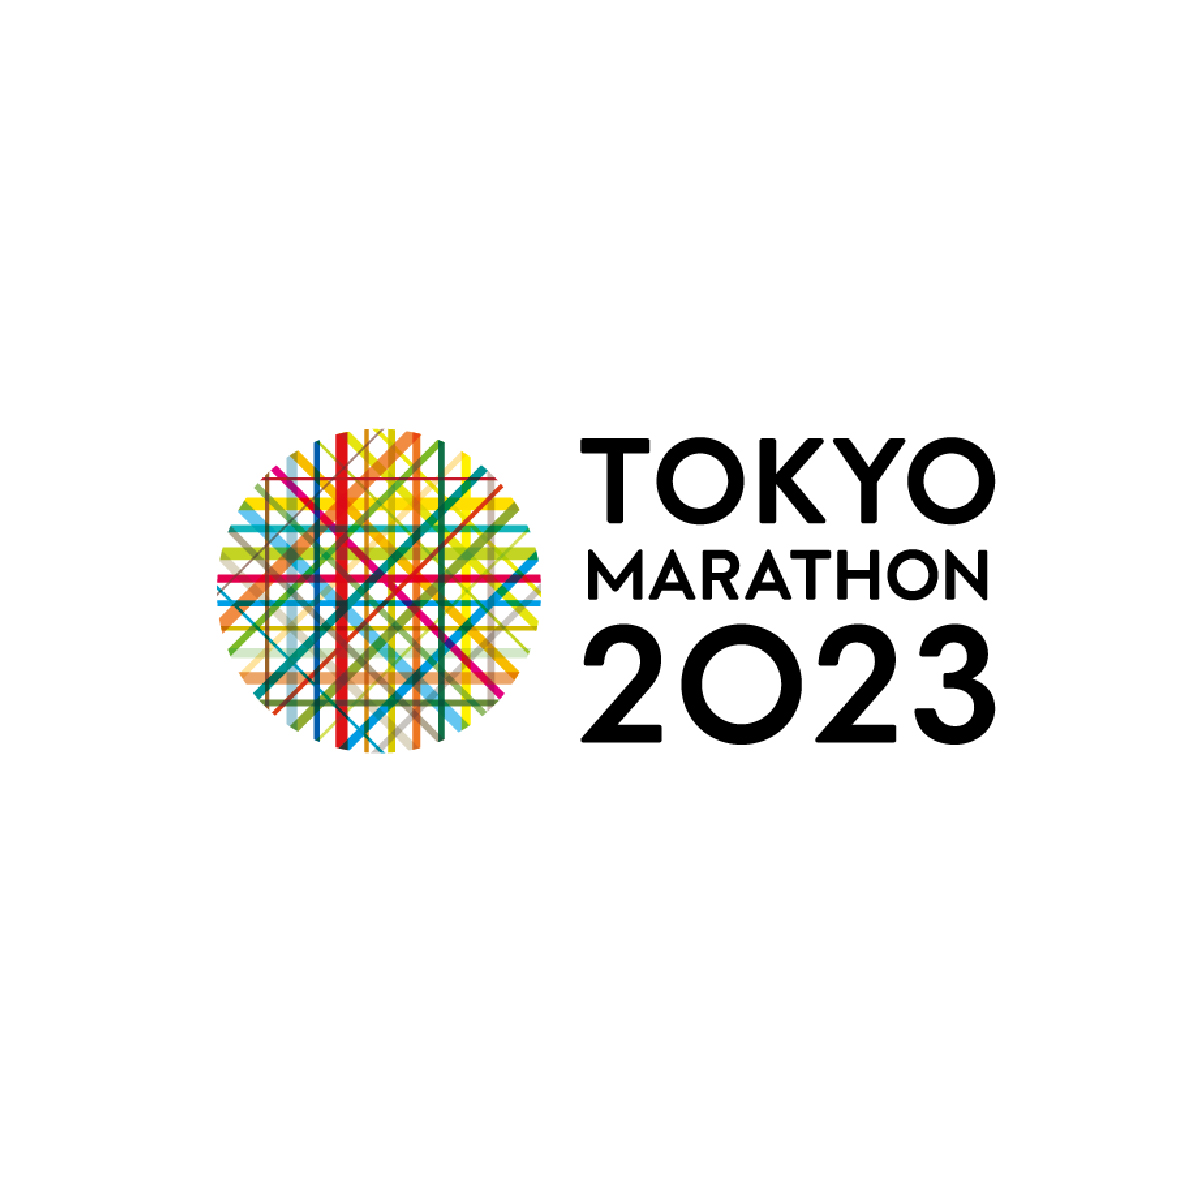 Tokyo Marathon Friendship Run 2023 TOKYO MARATHON 2023